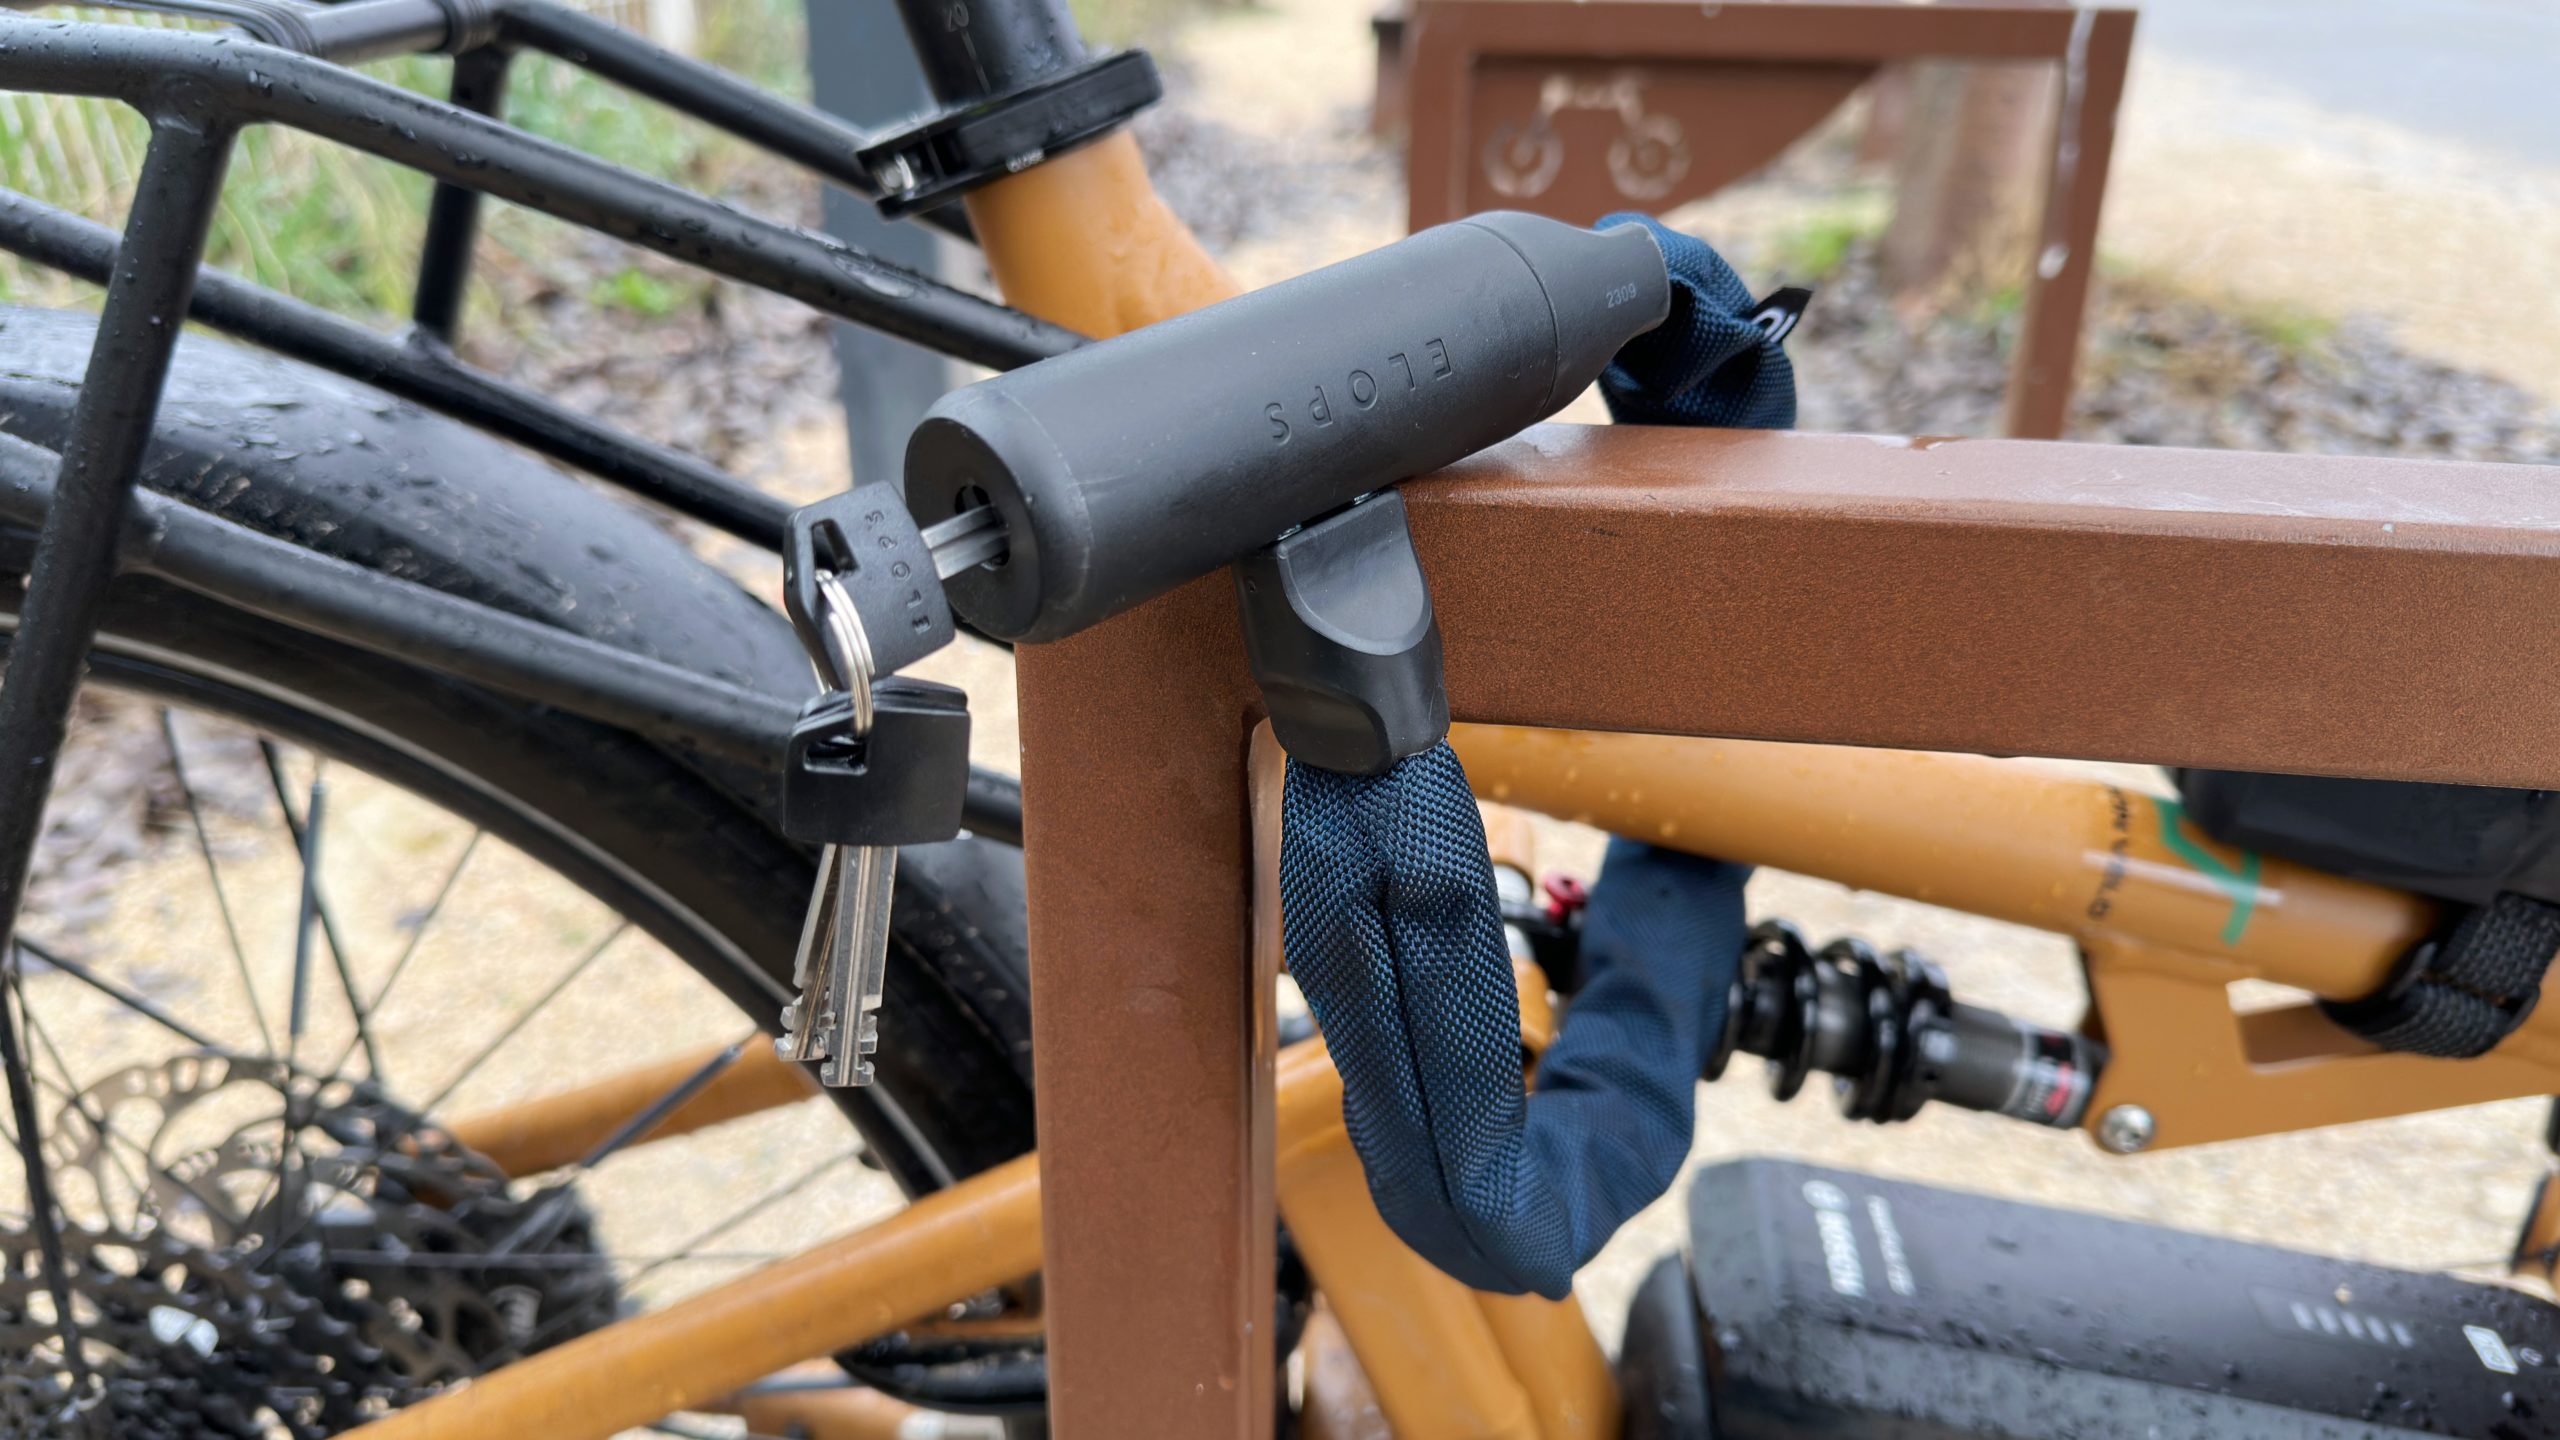 Ouverture de notre comparatif d'antivols pour vélo - Transition Vélo